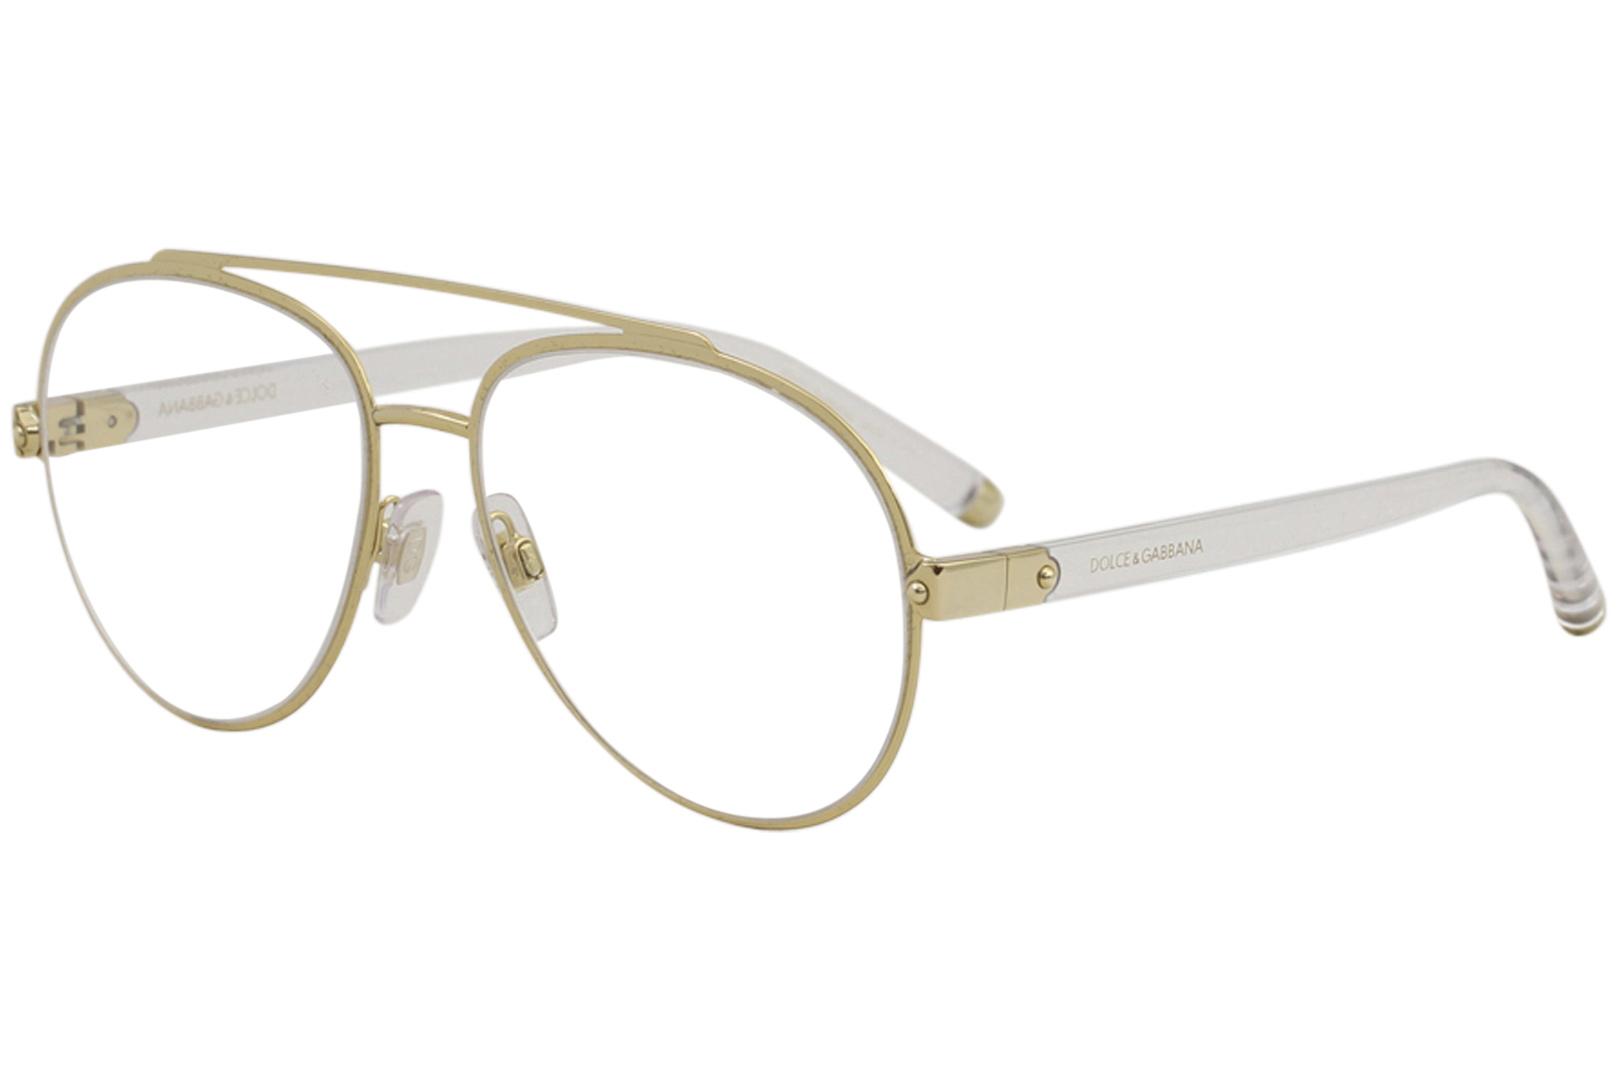 Dolce & Gabbana Women's Eyeglasses D&G DG1303 DG/1303 Full Rim Optical Frame - Gold - Lens 55 Bridge 16 B 49.1 ED 61.8 Temple 140mm